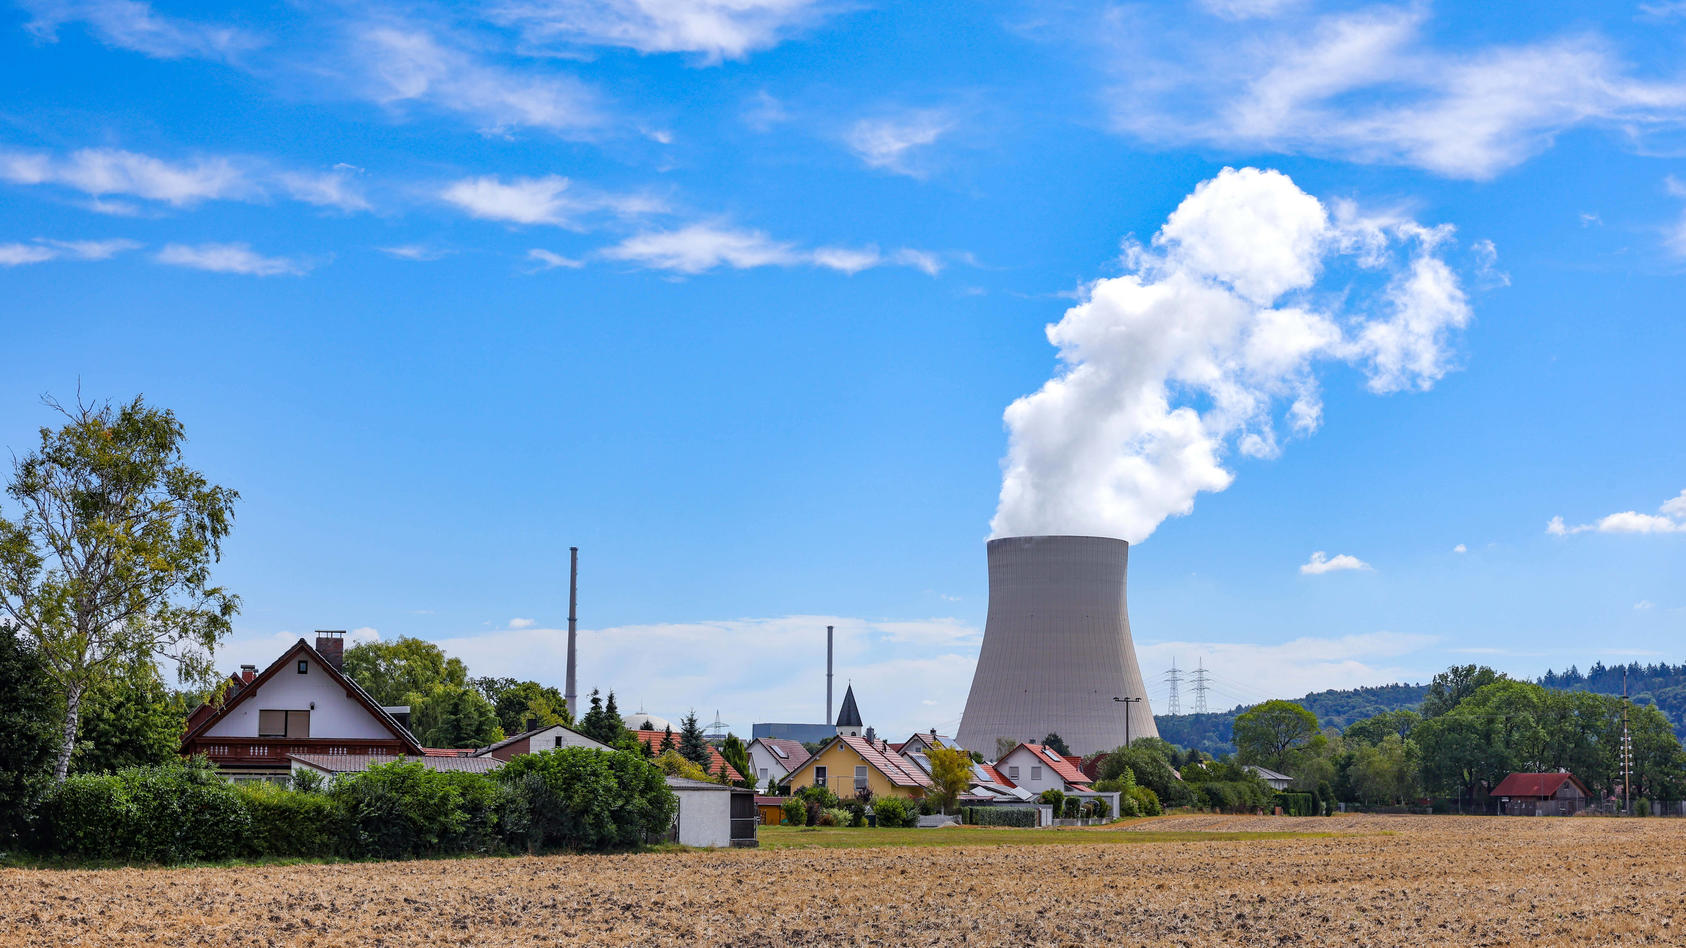  Atomkraft Atomkraftwerk Das Kernkraftwerk Isar, auch Kernkraftwerk Isar/Ohu liegt in Niederbayern im Dorf Unterahrain Markt Essenbach Kreis Landshut, 14 Kilometer flussabwärts von Landshut, auf dem Gebiet des Marktes Essenbach. Auf dem Werksgelände 